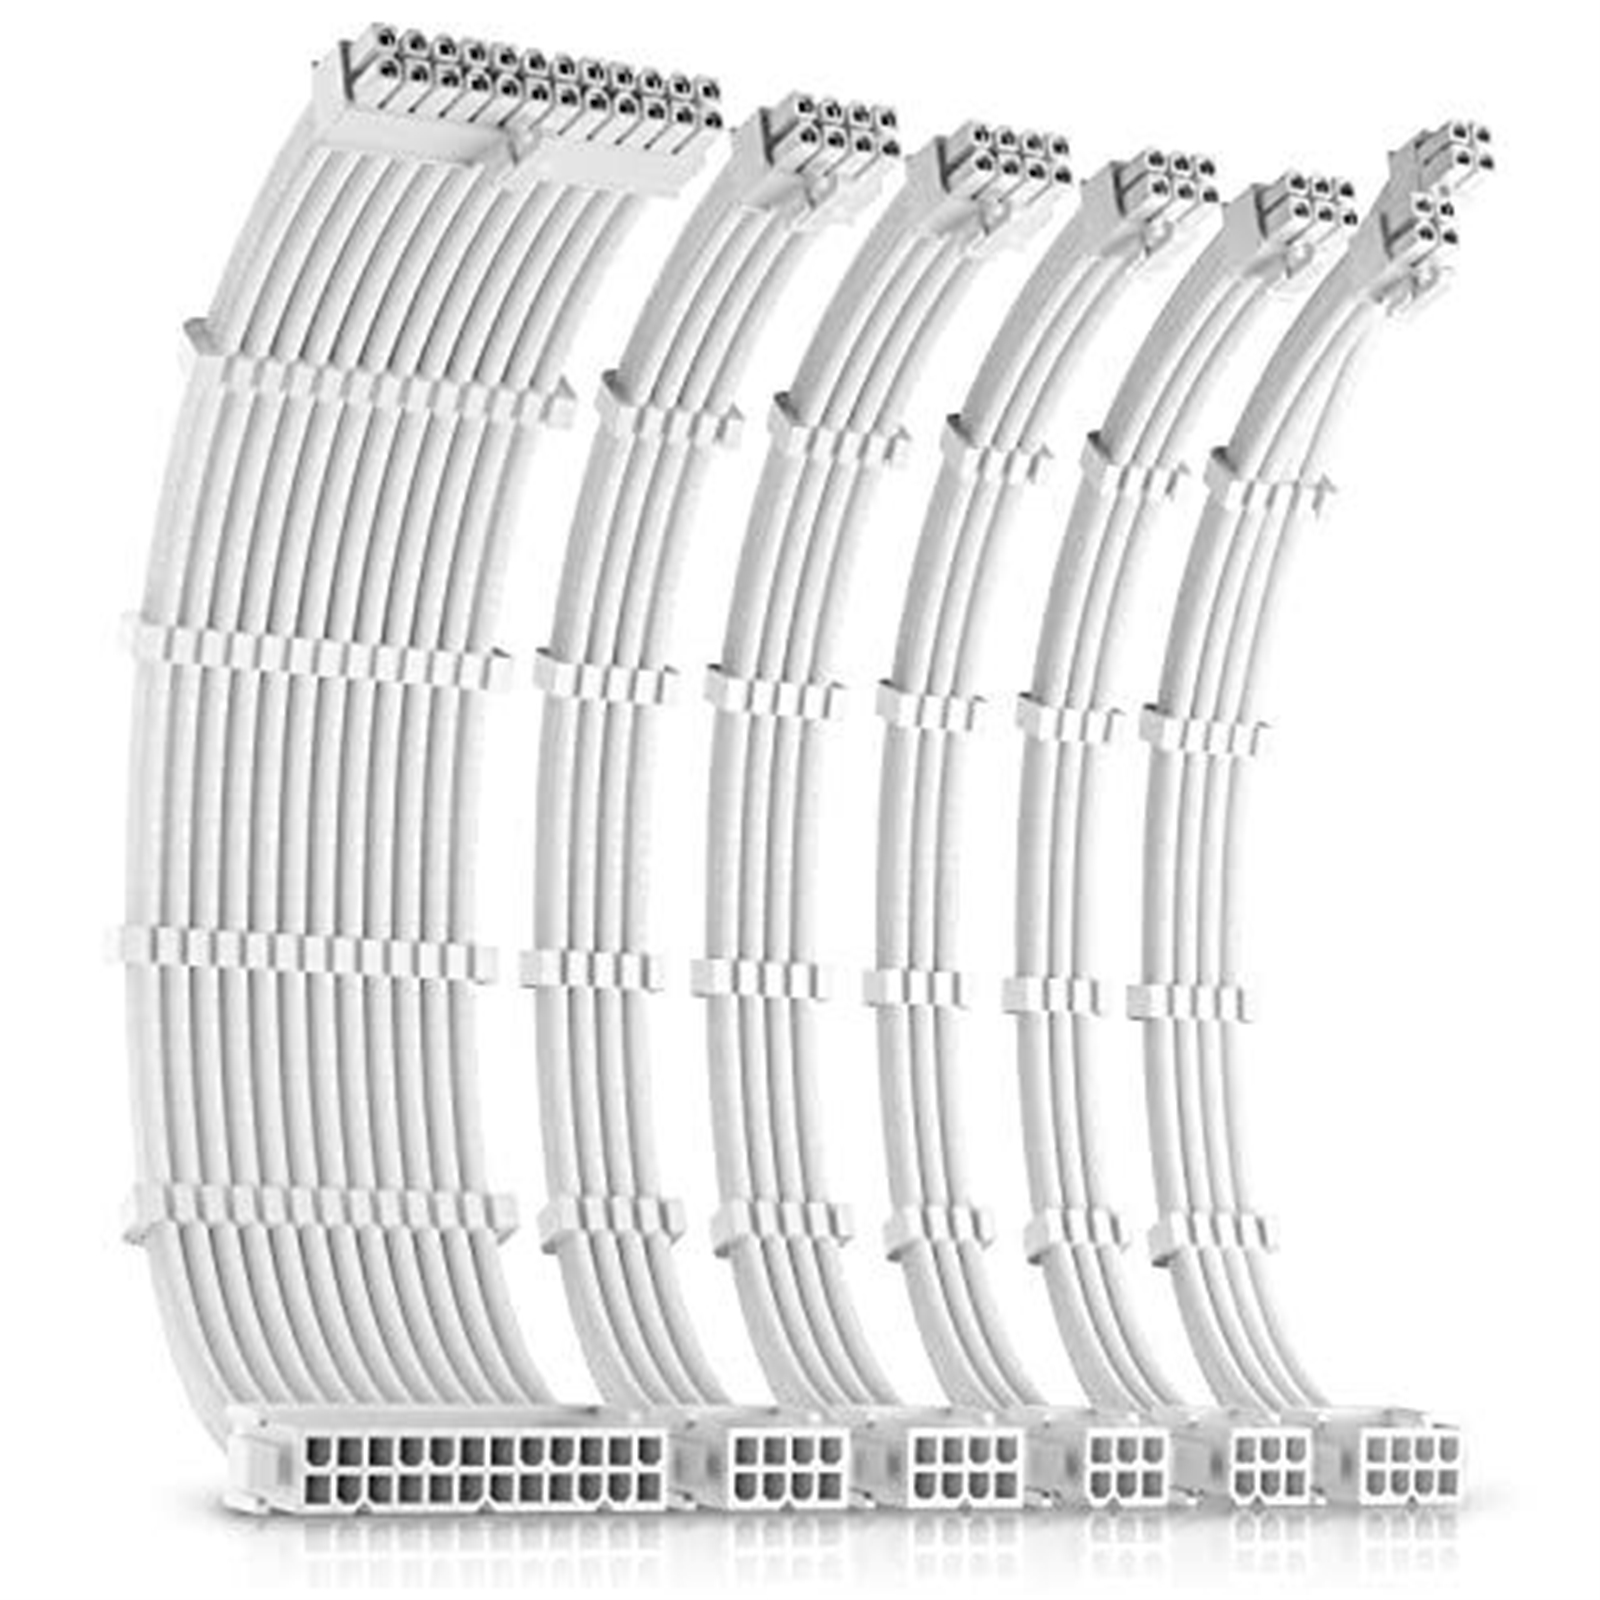 Antec White PSU Extension Cable Kit – 6 Pack (24 PIN / 1 x CPU 4+4 / 2x PCI-E 8 / 2 x PCI-E 6)